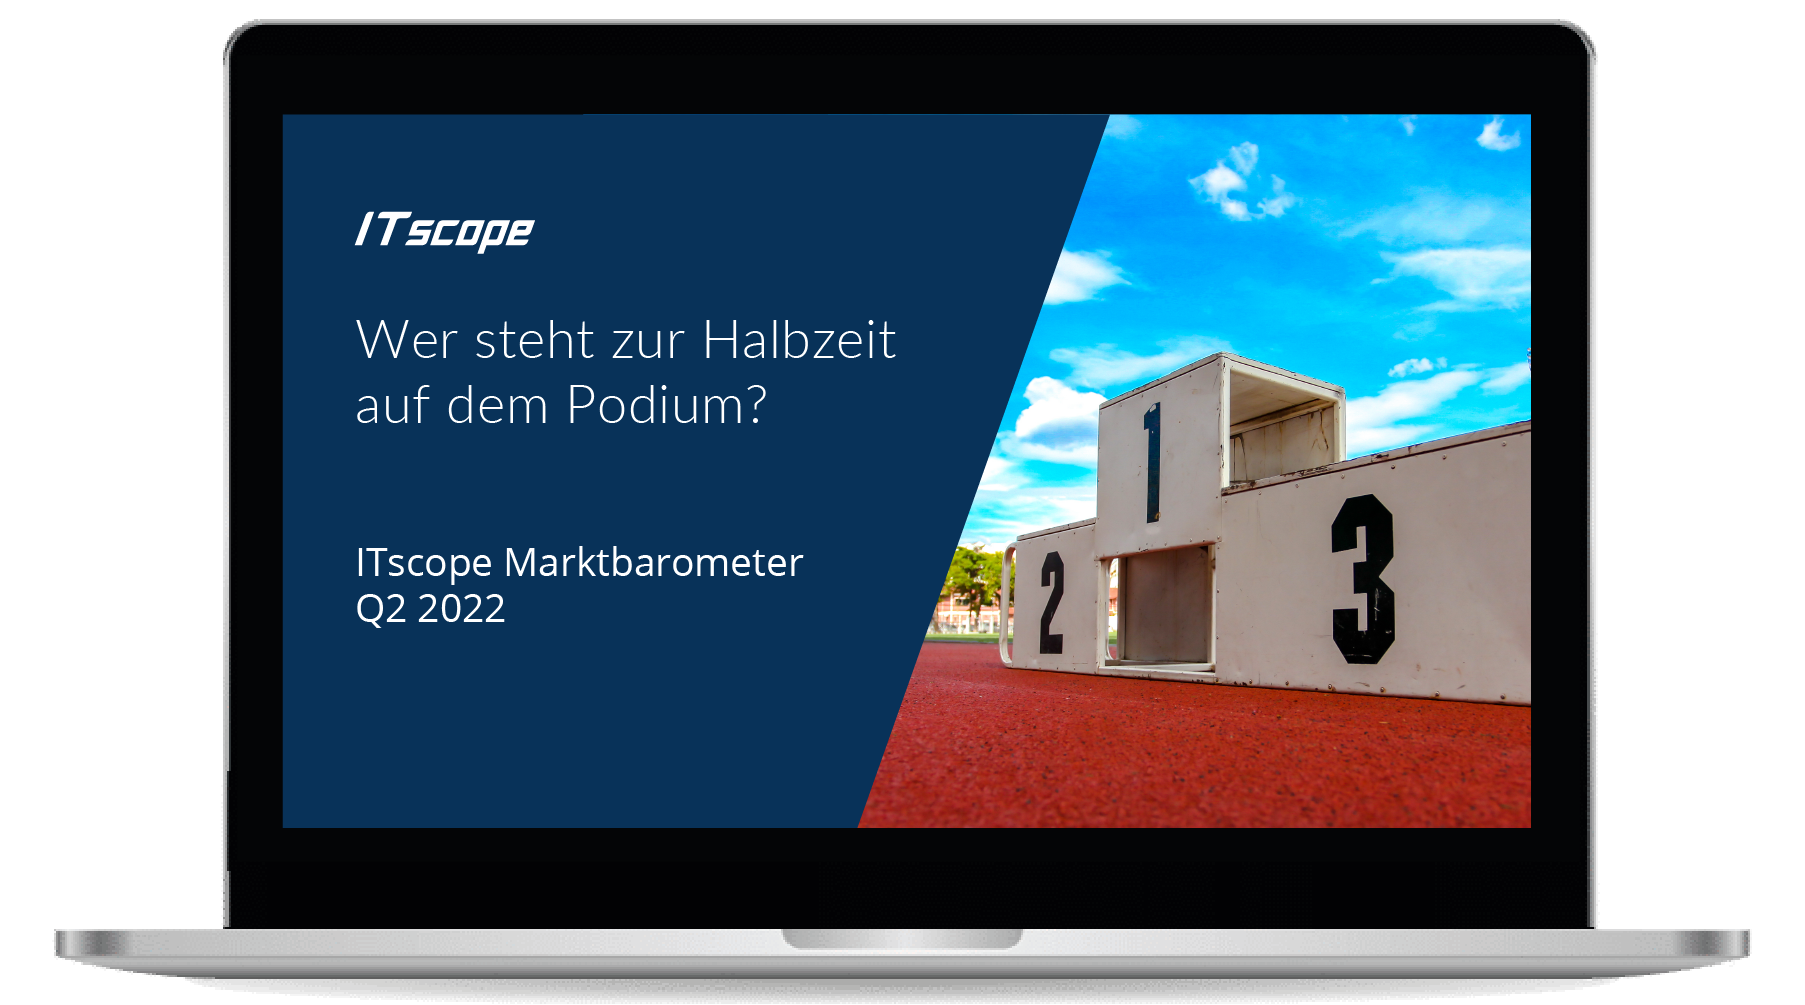 ITscope Marktbarometer Q2 2022: Wer steht zur Halbzeit auf dem Podium?